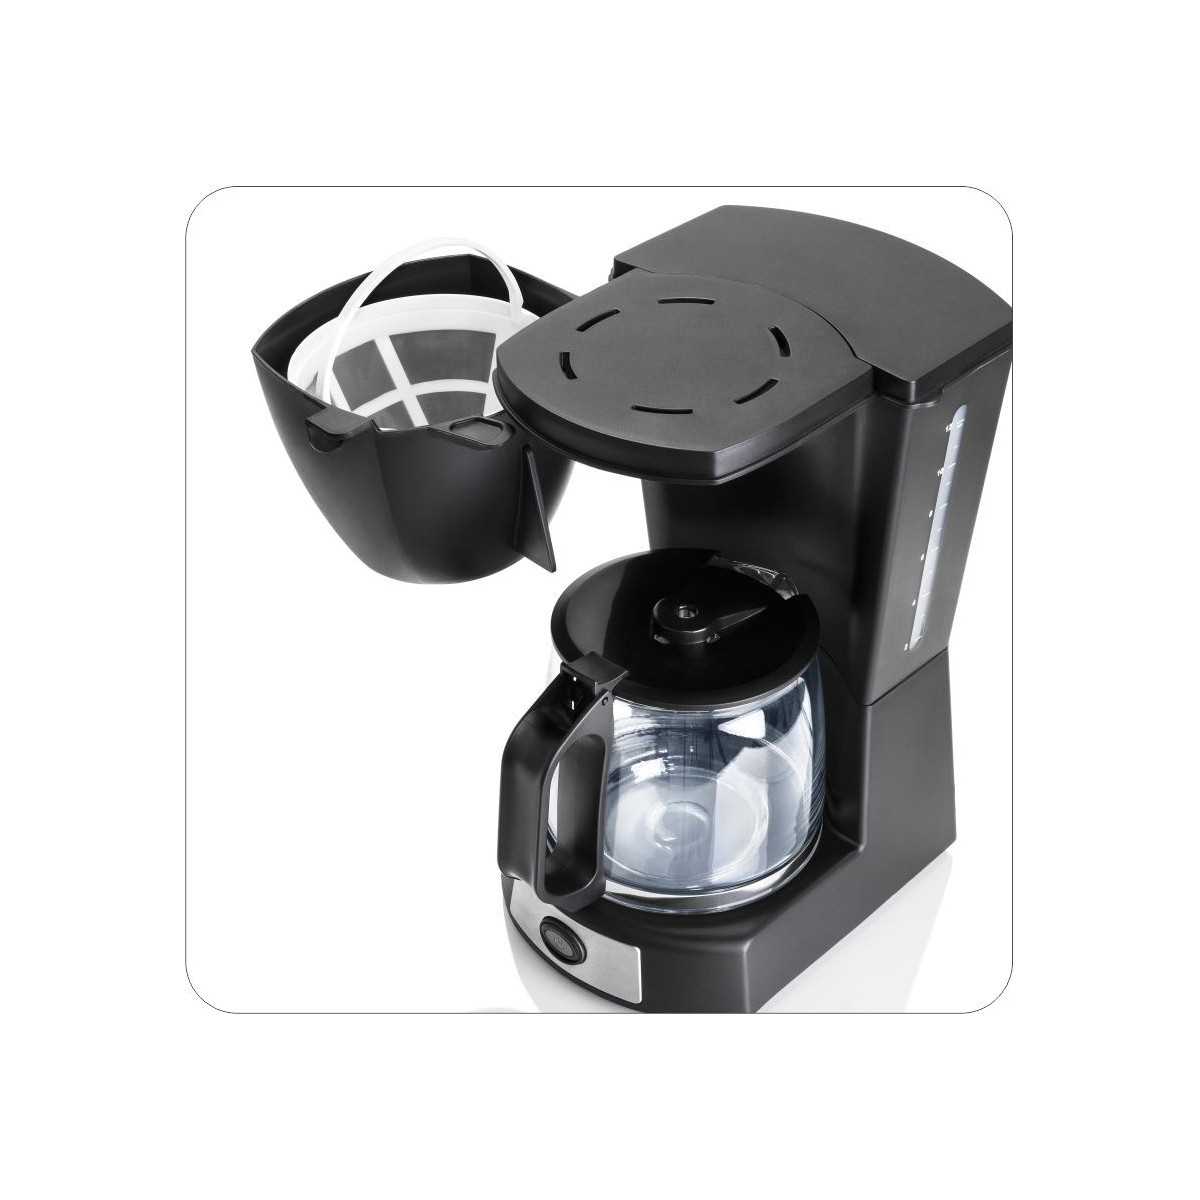 Filtros para Café - 12 Tazas, Industrial S-9979 - Uline